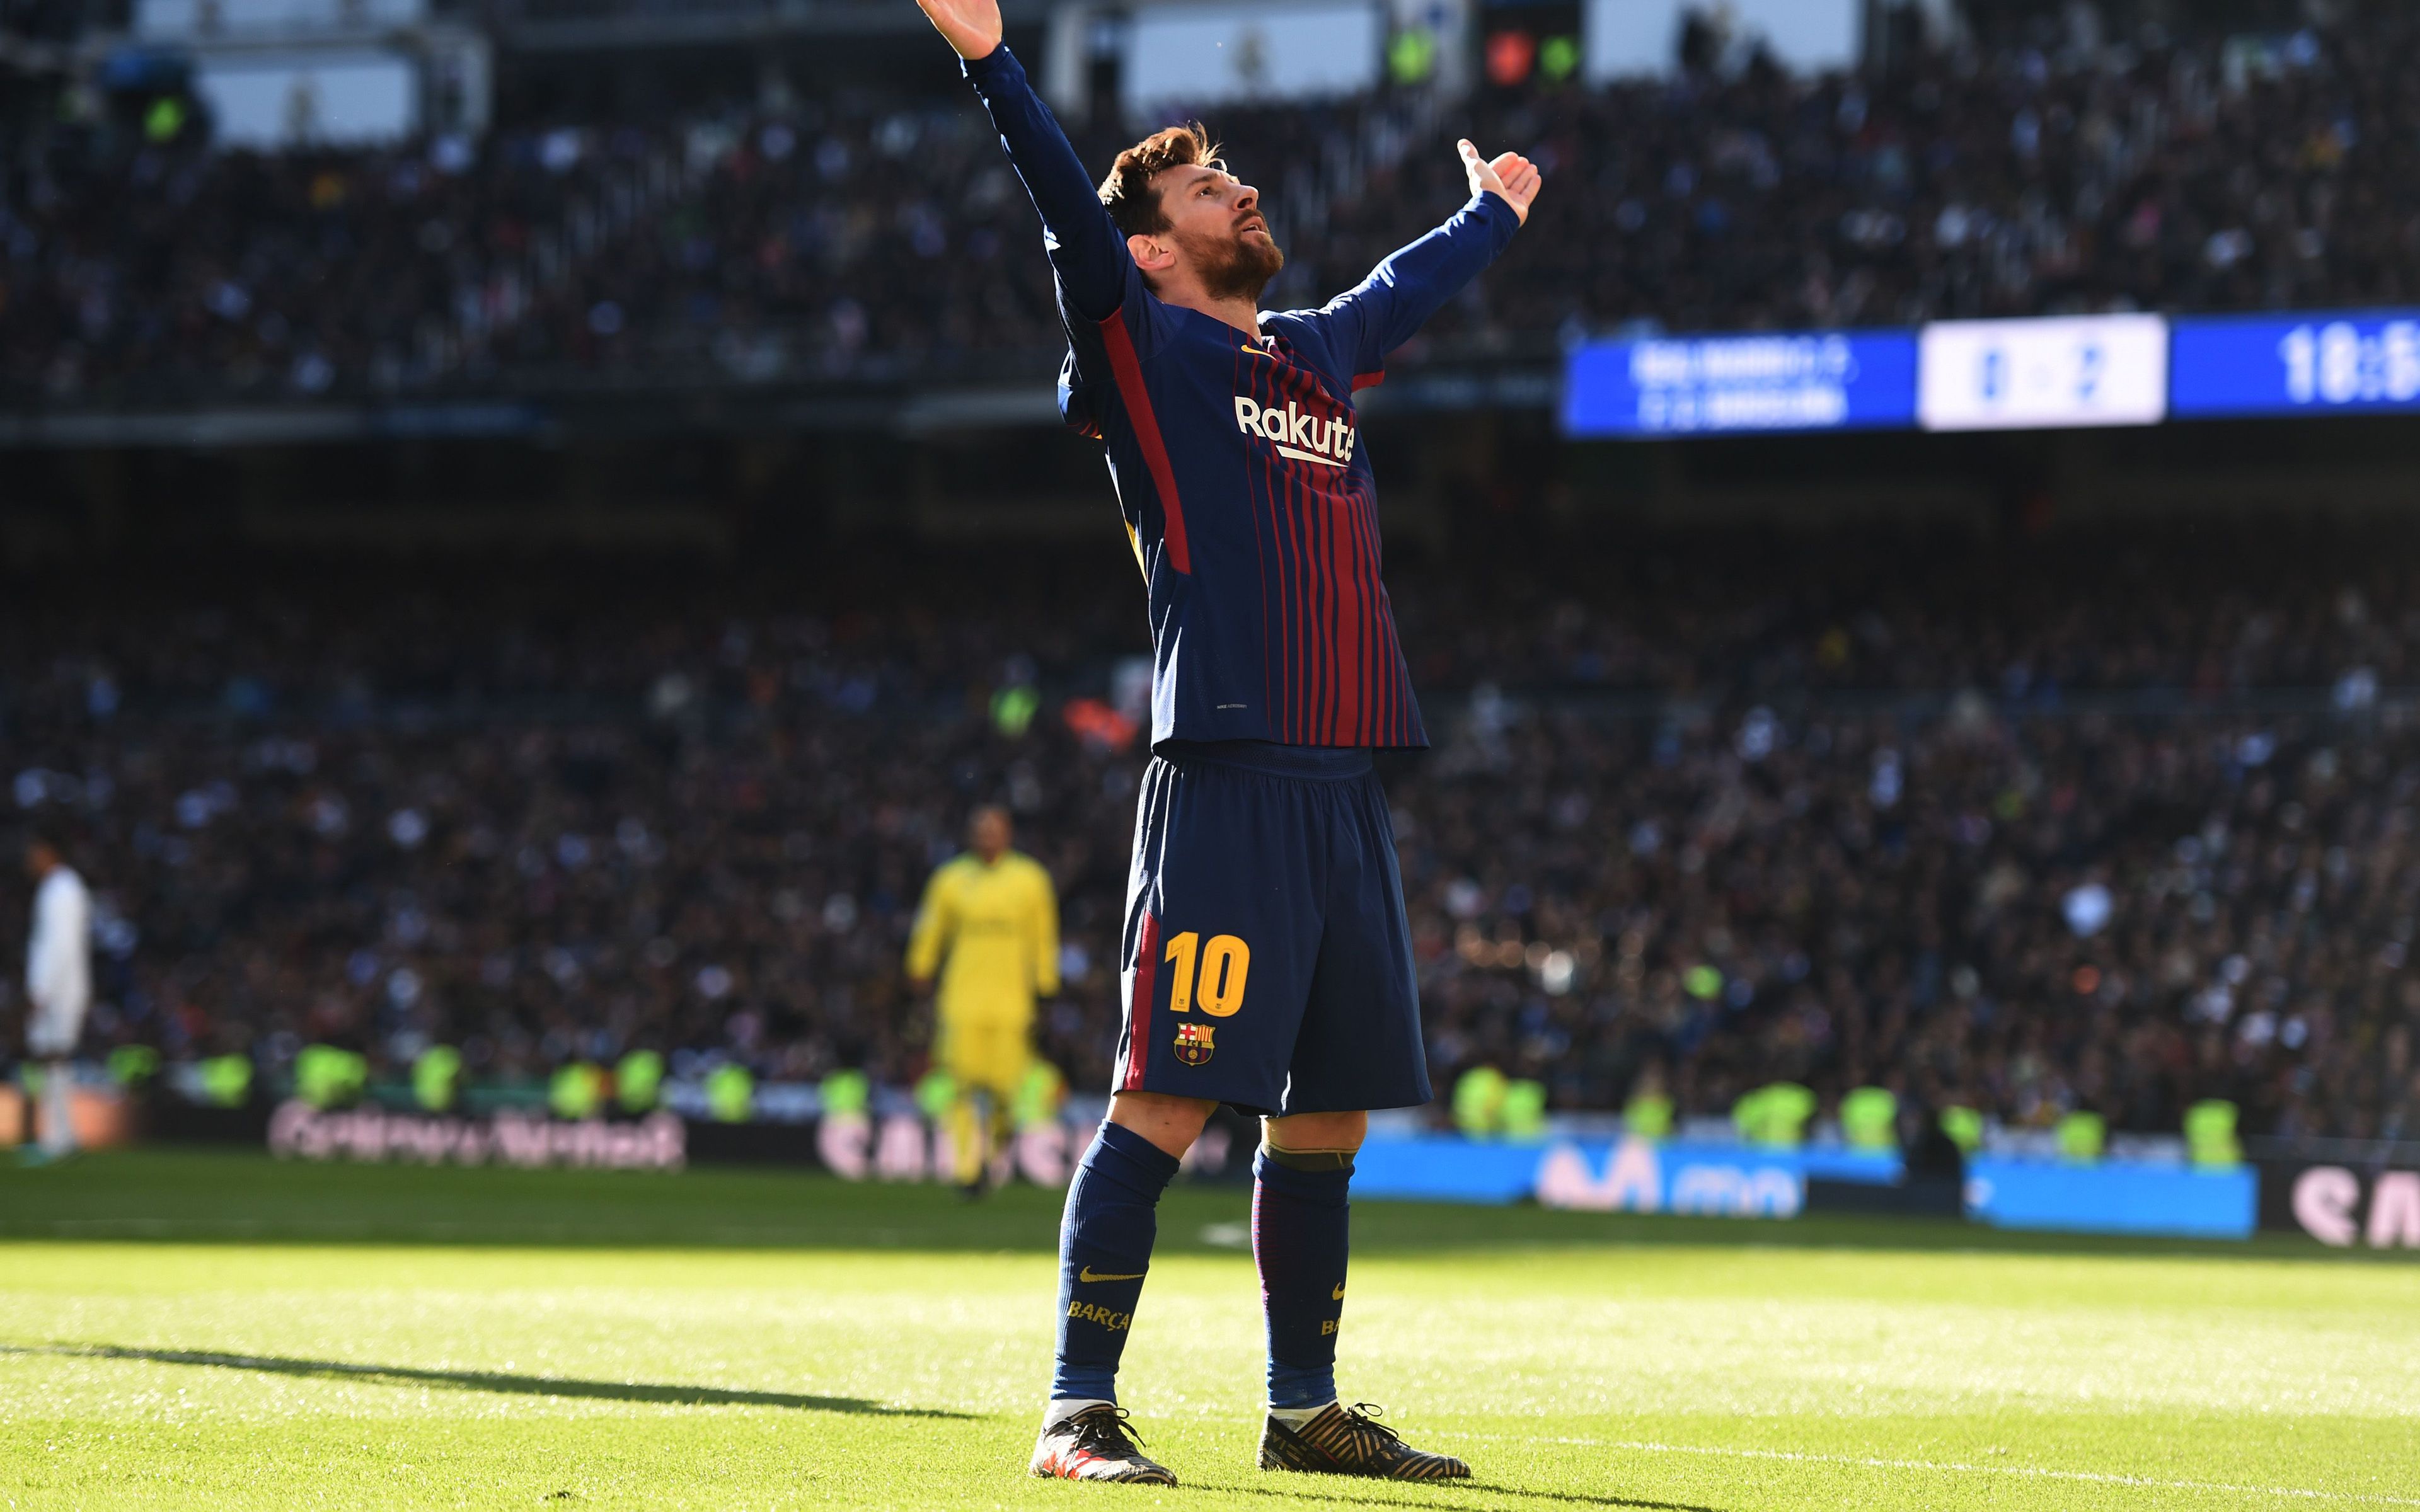 Ảnh nền Messi sẽ khiến bạn cảm thấy như đang ở đẳng cấp số một. Không chỉ là một ngôi sao bóng đá xuất sắc, Messi còn là một biểu tượng thể thao trên toàn cầu. Hãy xem ảnh đẹp này để cùng hưởng thụ tài năng của anh ấy.